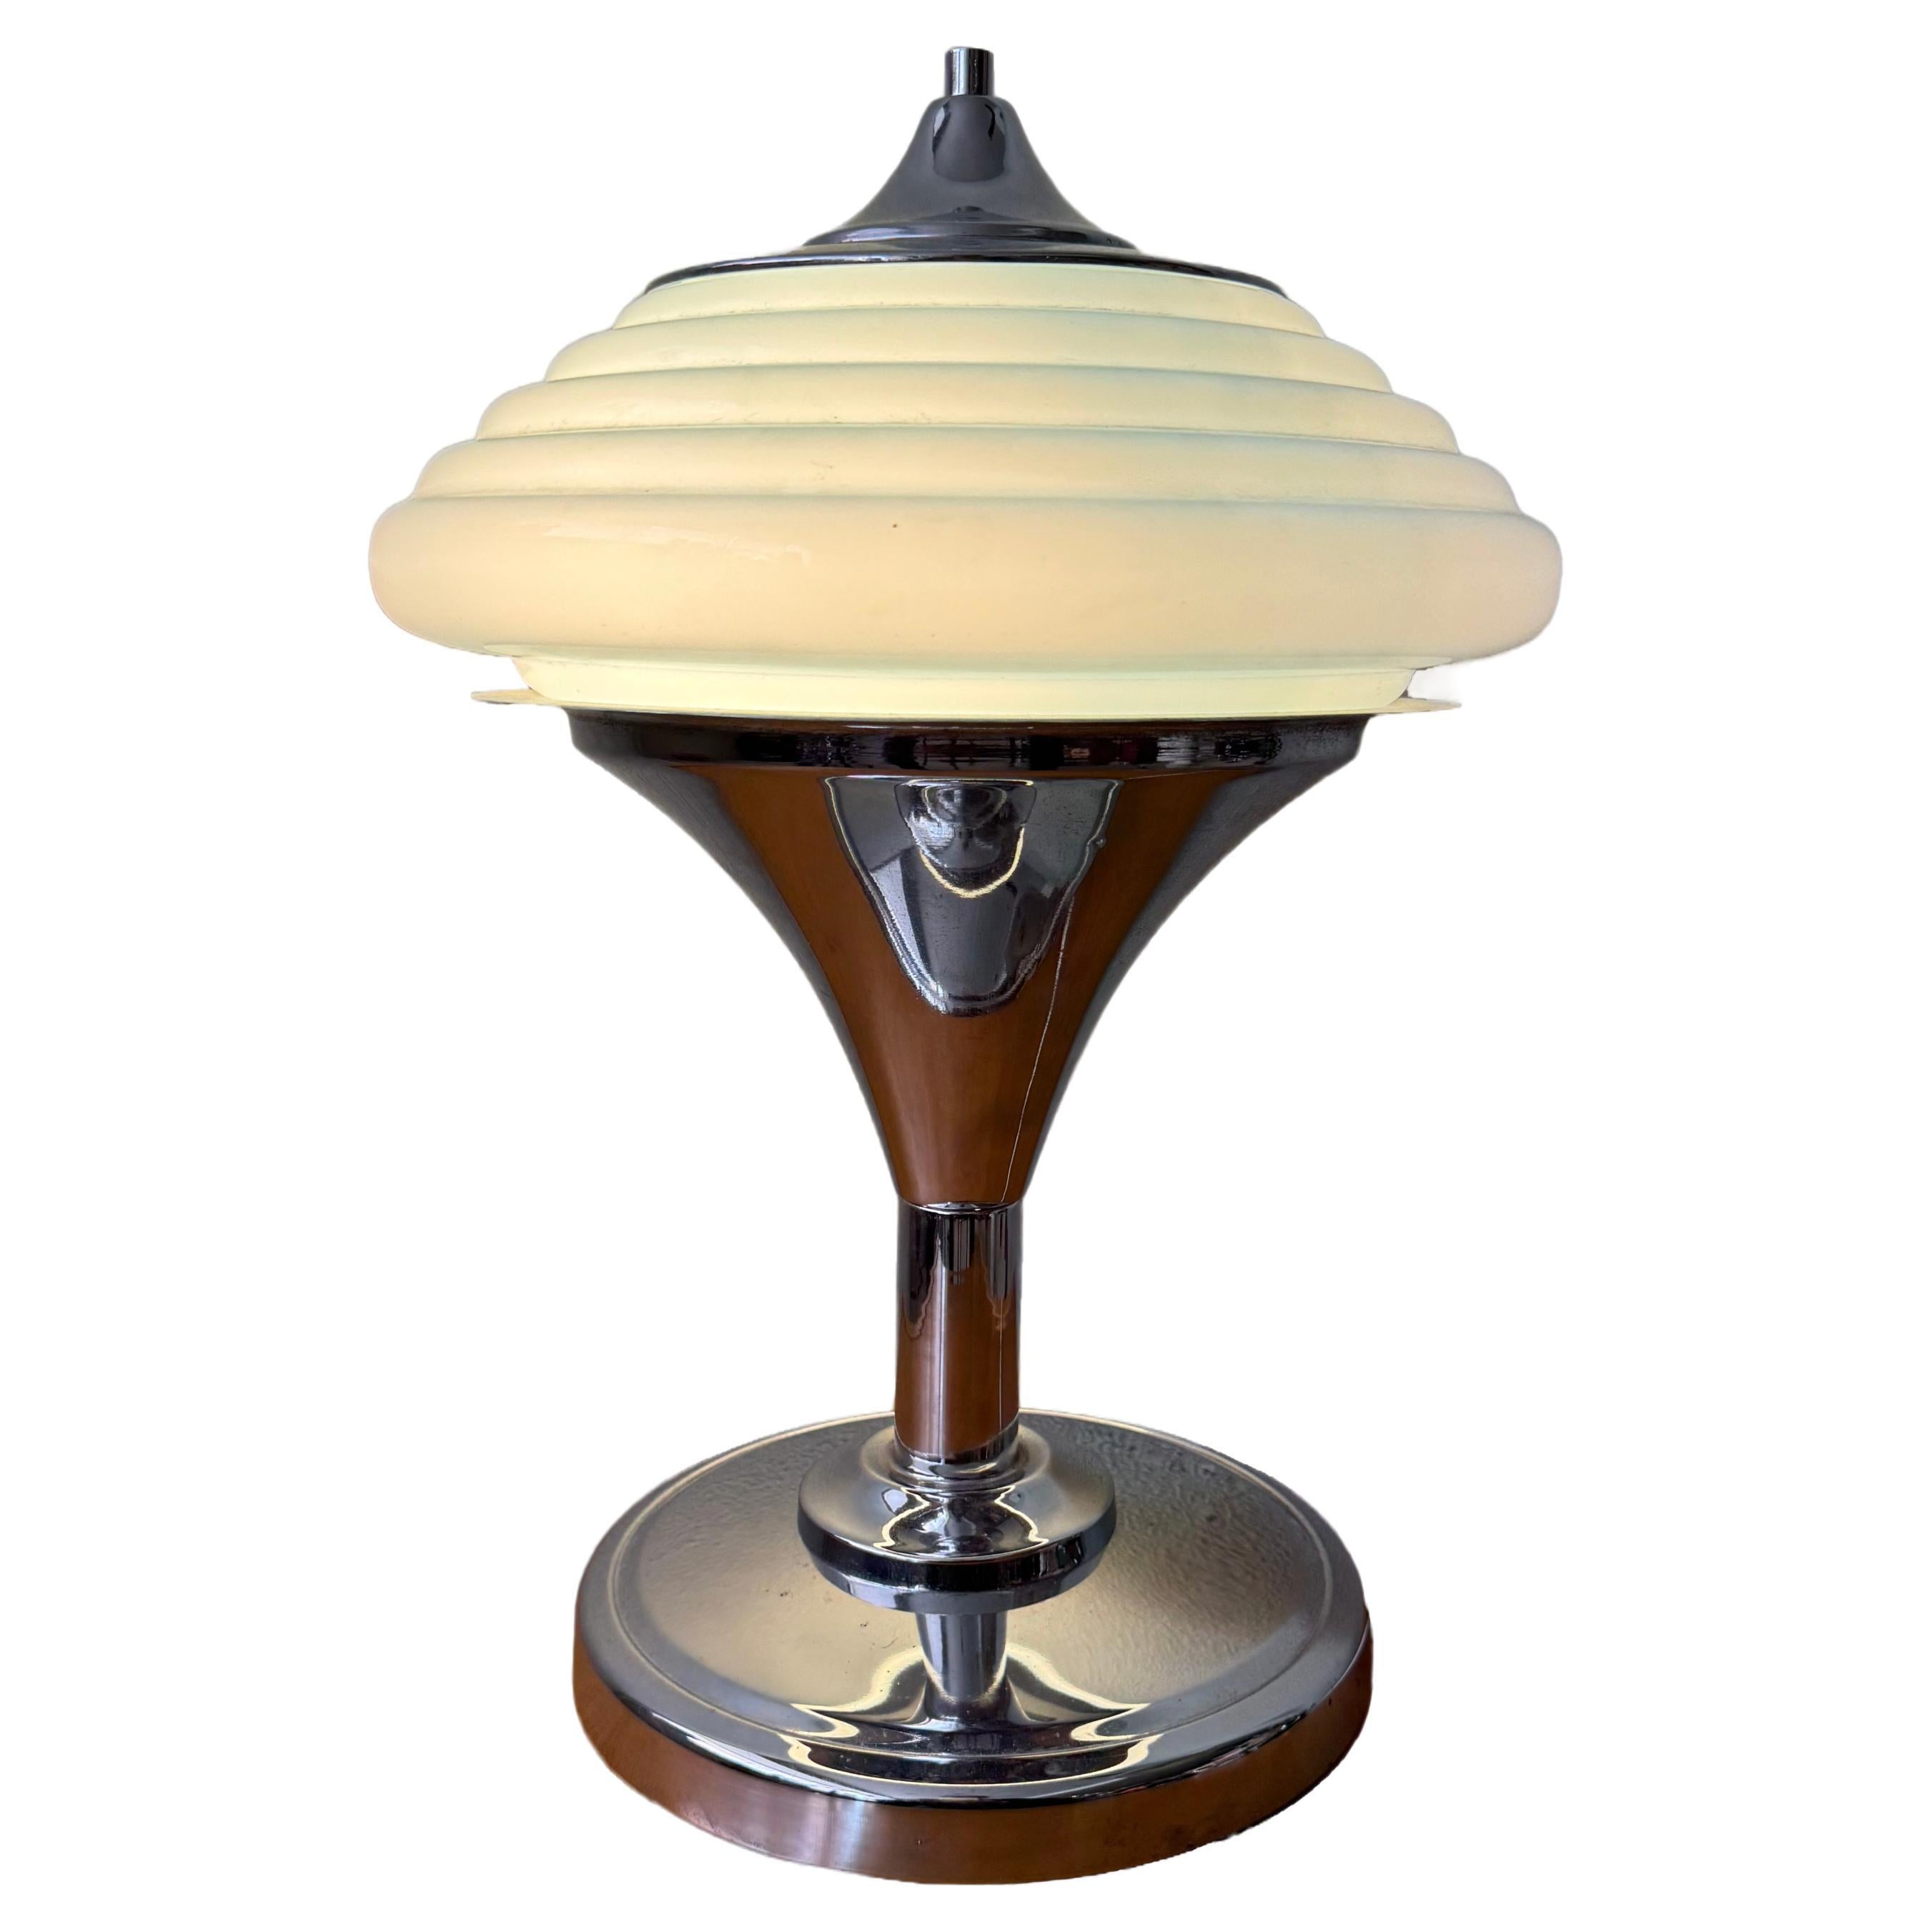 Diese atemberaubende portugiesische Art-Déco-Tischlampe aus den 1940er Jahren ist ein echtes Vintage-Schmuckstück. Die von Gaivota in Portugal entworfene und produzierte Leuchte verfügt über einen eleganten, konischen Sockel aus verchromtem Metall,